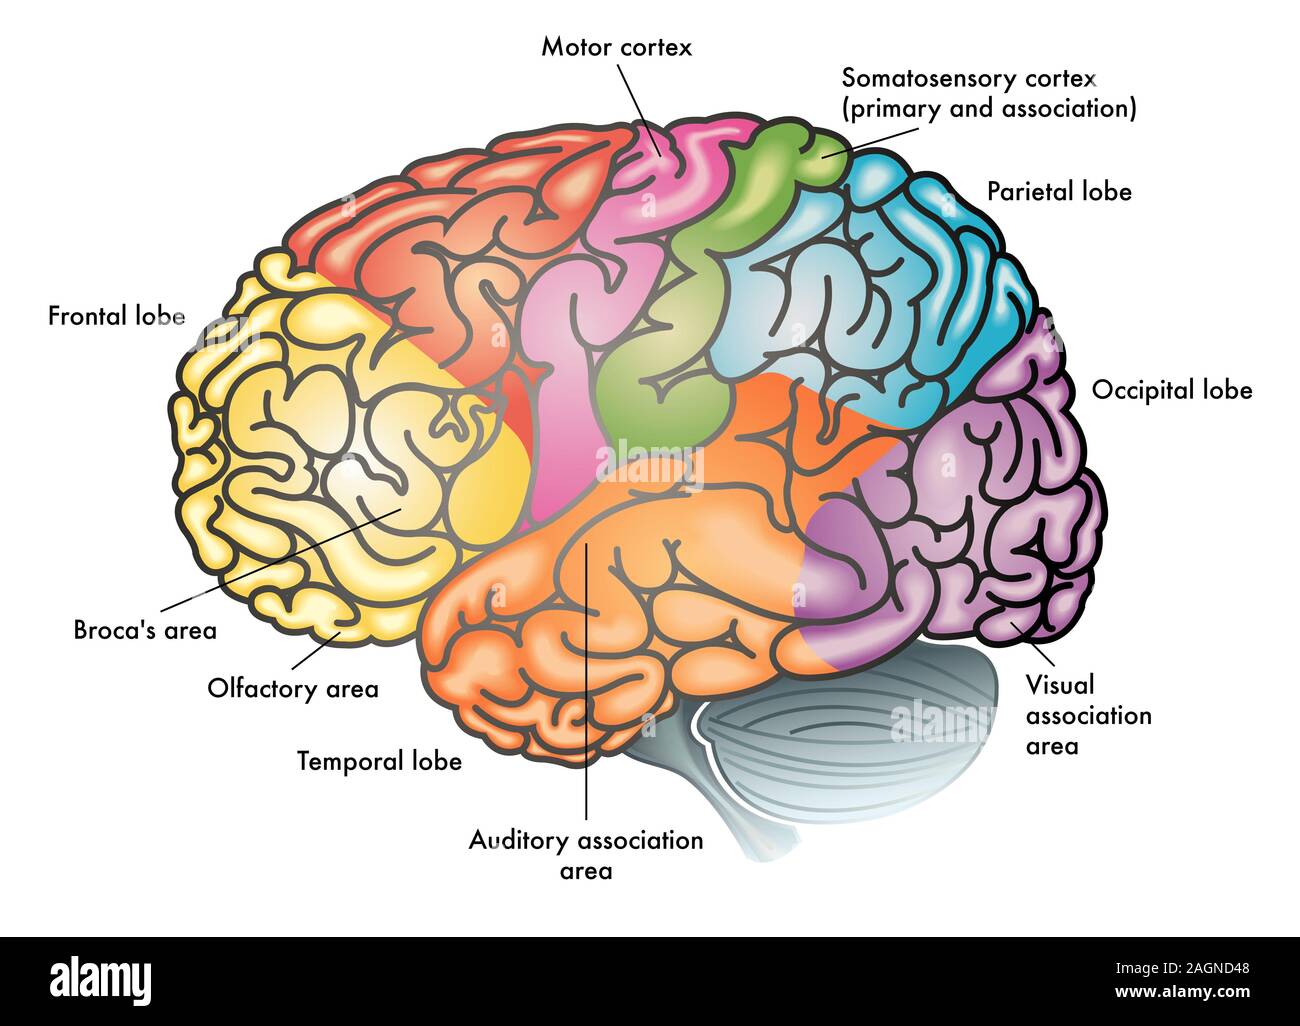 Illustration d'un coloré médical cerveau humain avec différents secteurs fonctionnels mis en évidence avec des couleurs différentes Banque D'Images